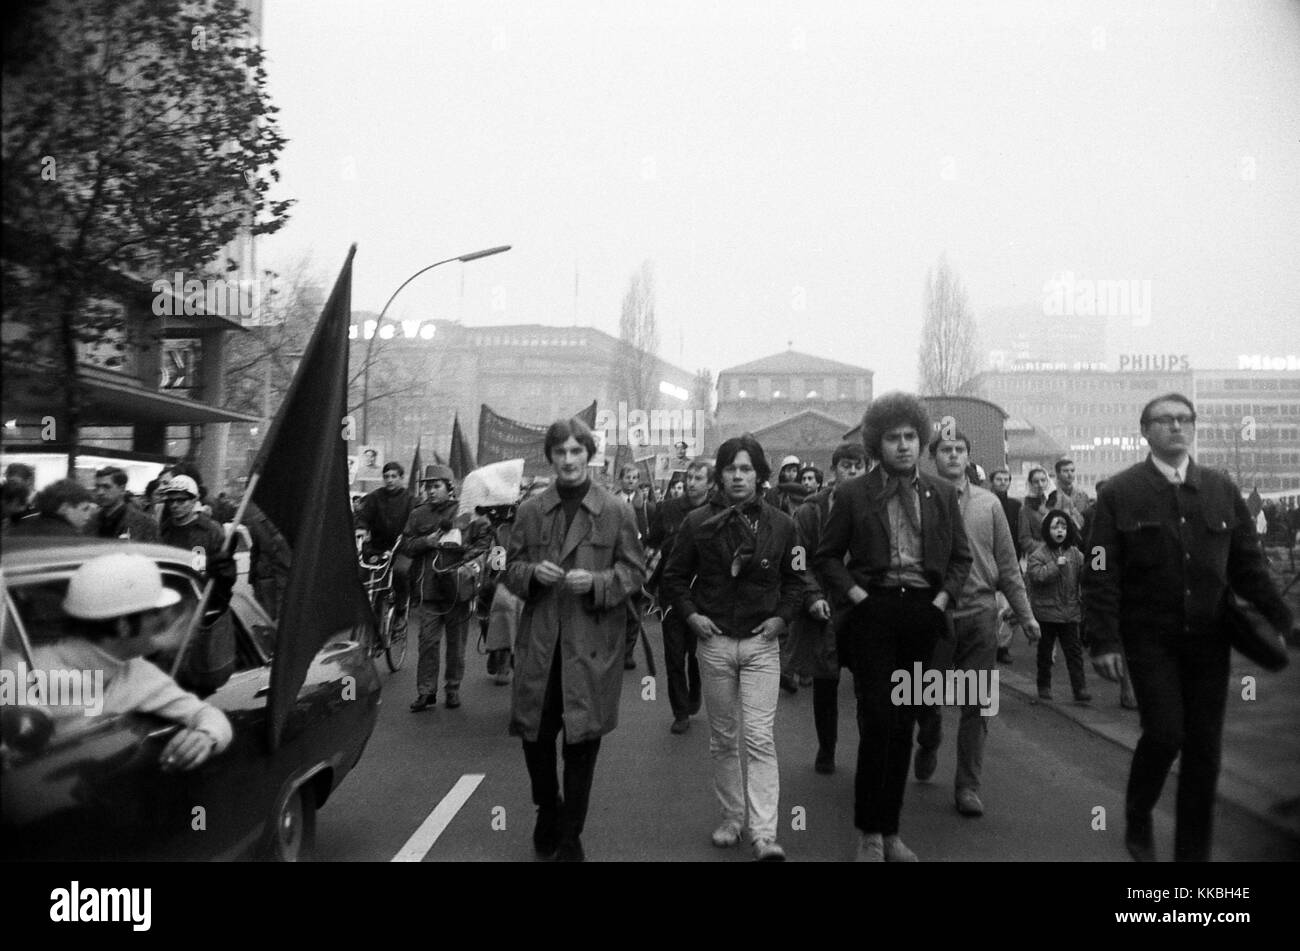 Philippe Gras / Le Pictorium - Raccolta a Berlino nel 1968 - 1968 - Germania / Berlino - il tedesco manifestazioni culmineranno il 17 e 18 febbraio 1968. A Berlino, migliaia di studenti provenienti da tutta Europa si oppongono alla guerra in Vietnam e la riforma delle università. Il movimento si sta diffondendo a importanti università tedesca città. In 30 città tedesche, le manifestazioni studentesche girare a scontri con la polizia. Questi sono i tumulti di Pasqua. La repressione brutale e mette fine a massicce dimostrazioni. L'ultimo avviene a Bonn il 11 maggio 1968 e riunisce un centinaio di thousa Foto Stock